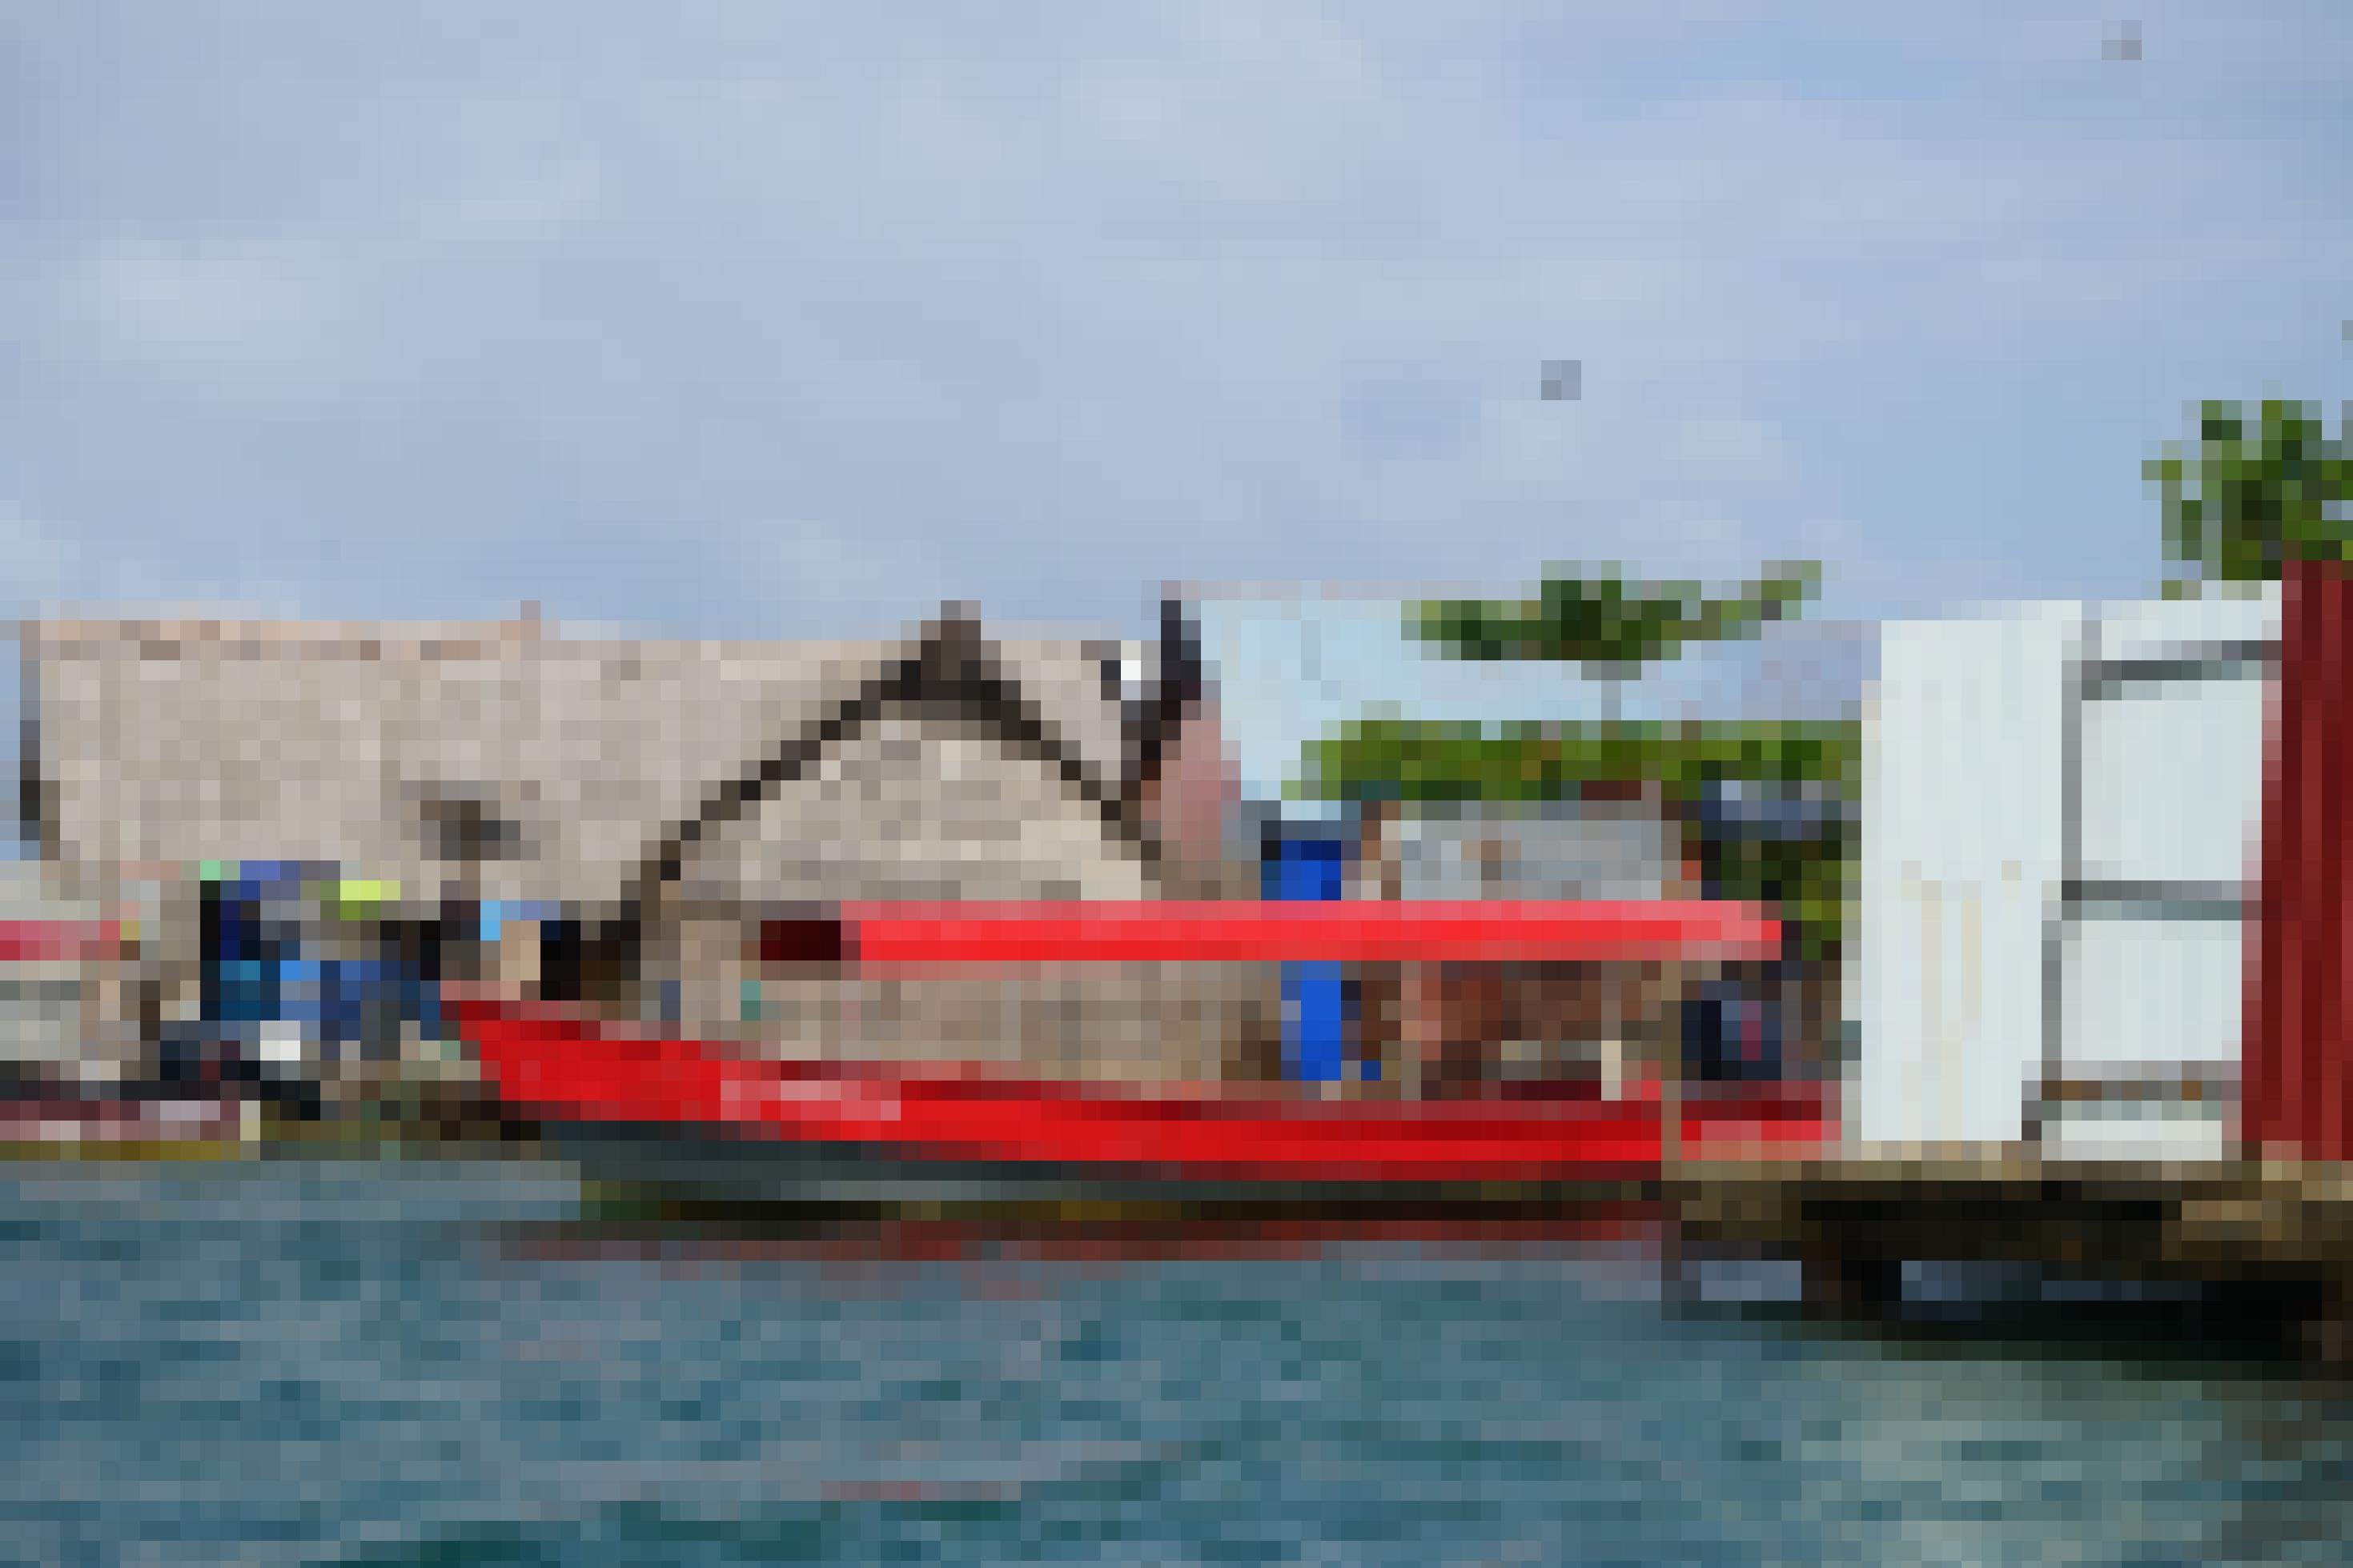 Ein rotes Boot dümpelt vor einer Kulisse von Holzhäusern im Meer.